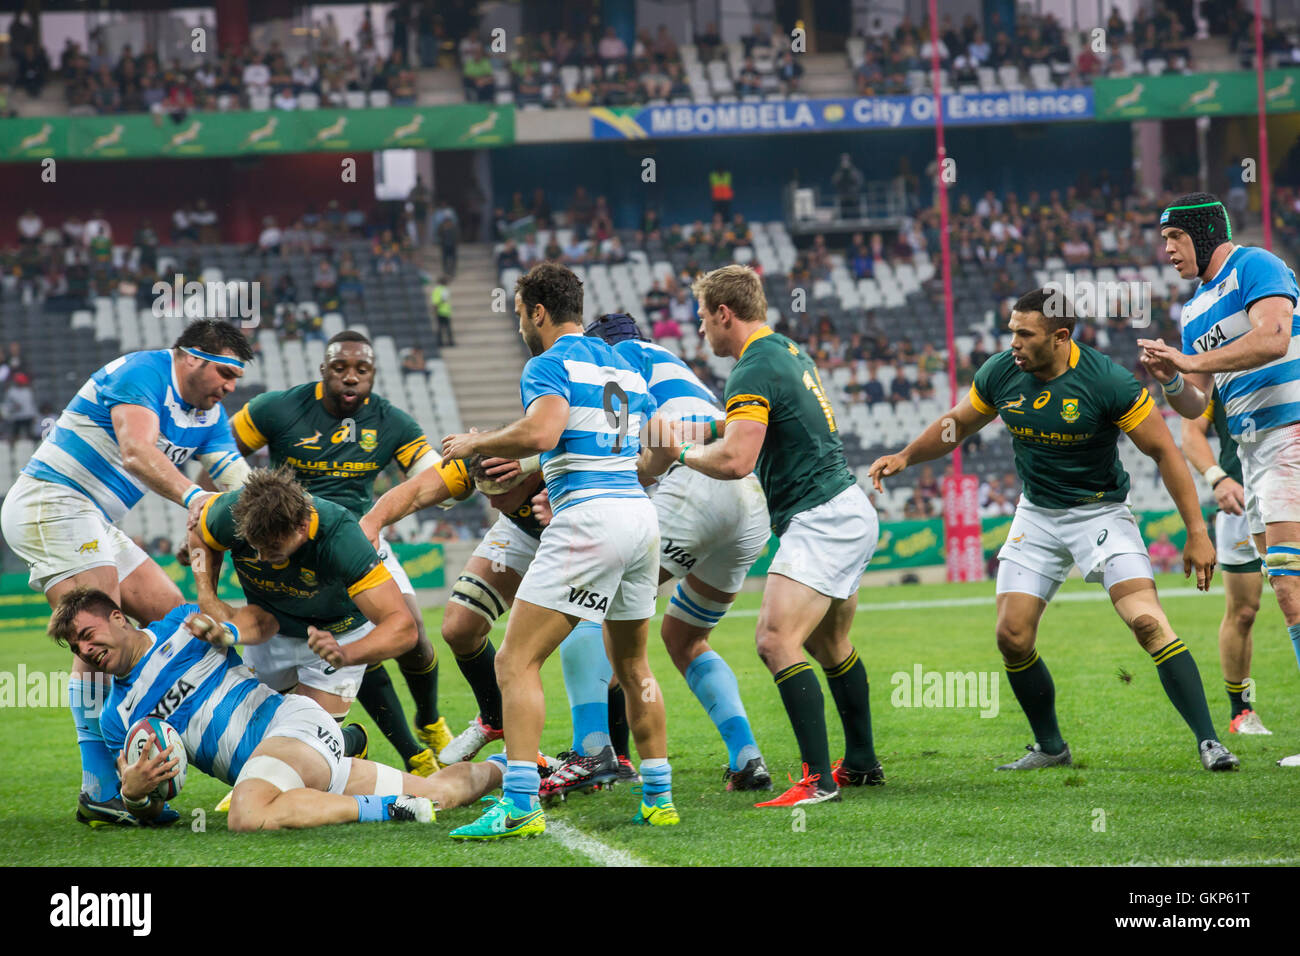 Nelspruit, Sud Africa. Il 20 agosto 2016. La South African National Rugby team in azione contro la Puma presso lo Stadio Mbombela. Facundo Isa con la palla. Foto Stock